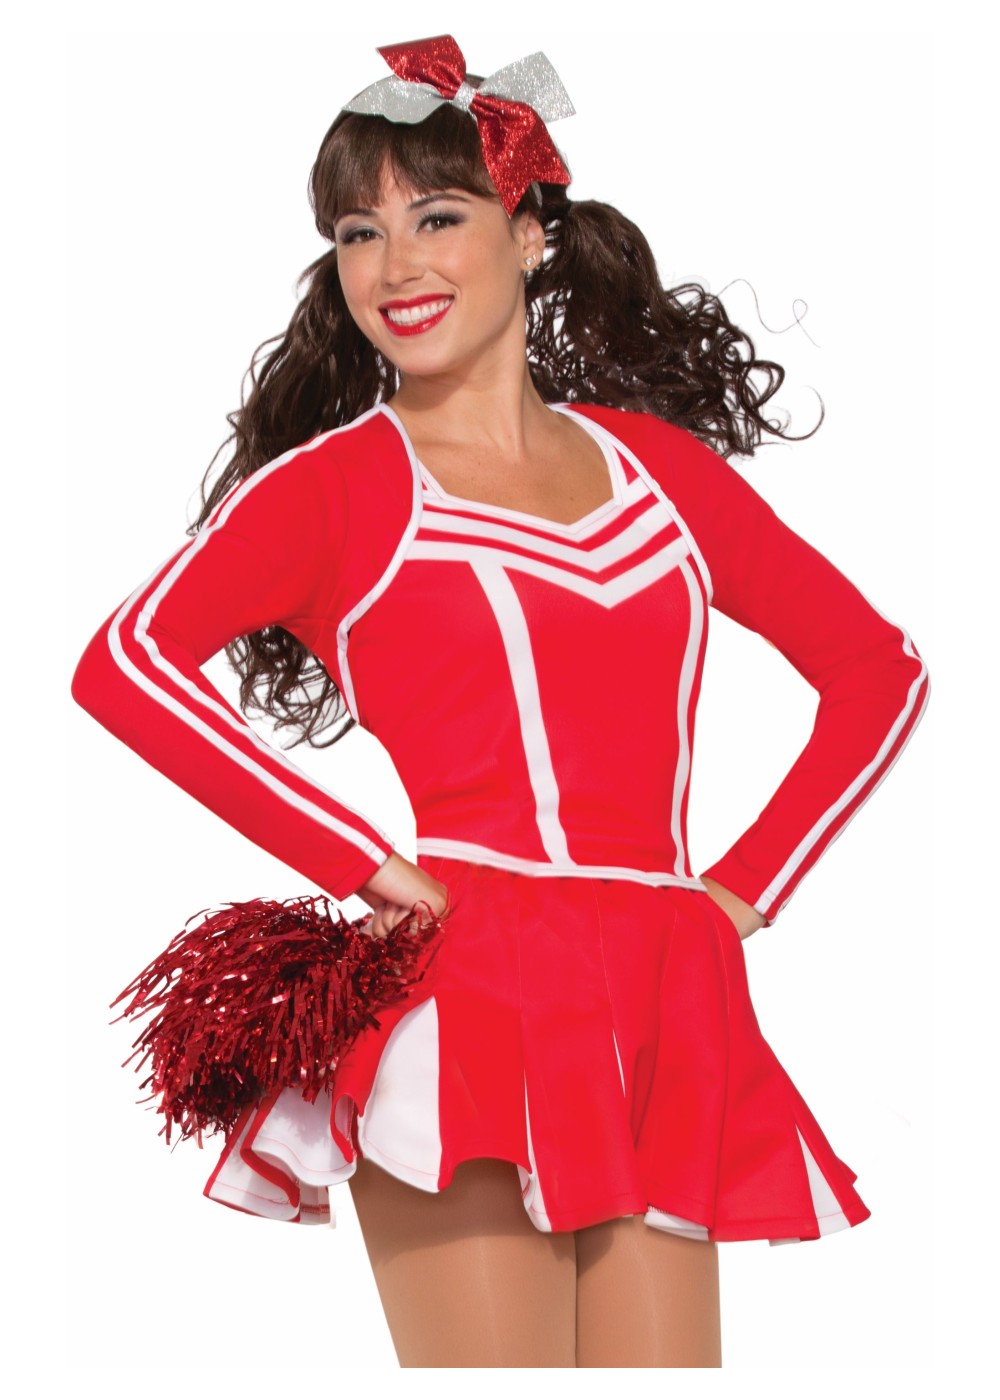 Red Cheerleader Women Skirt